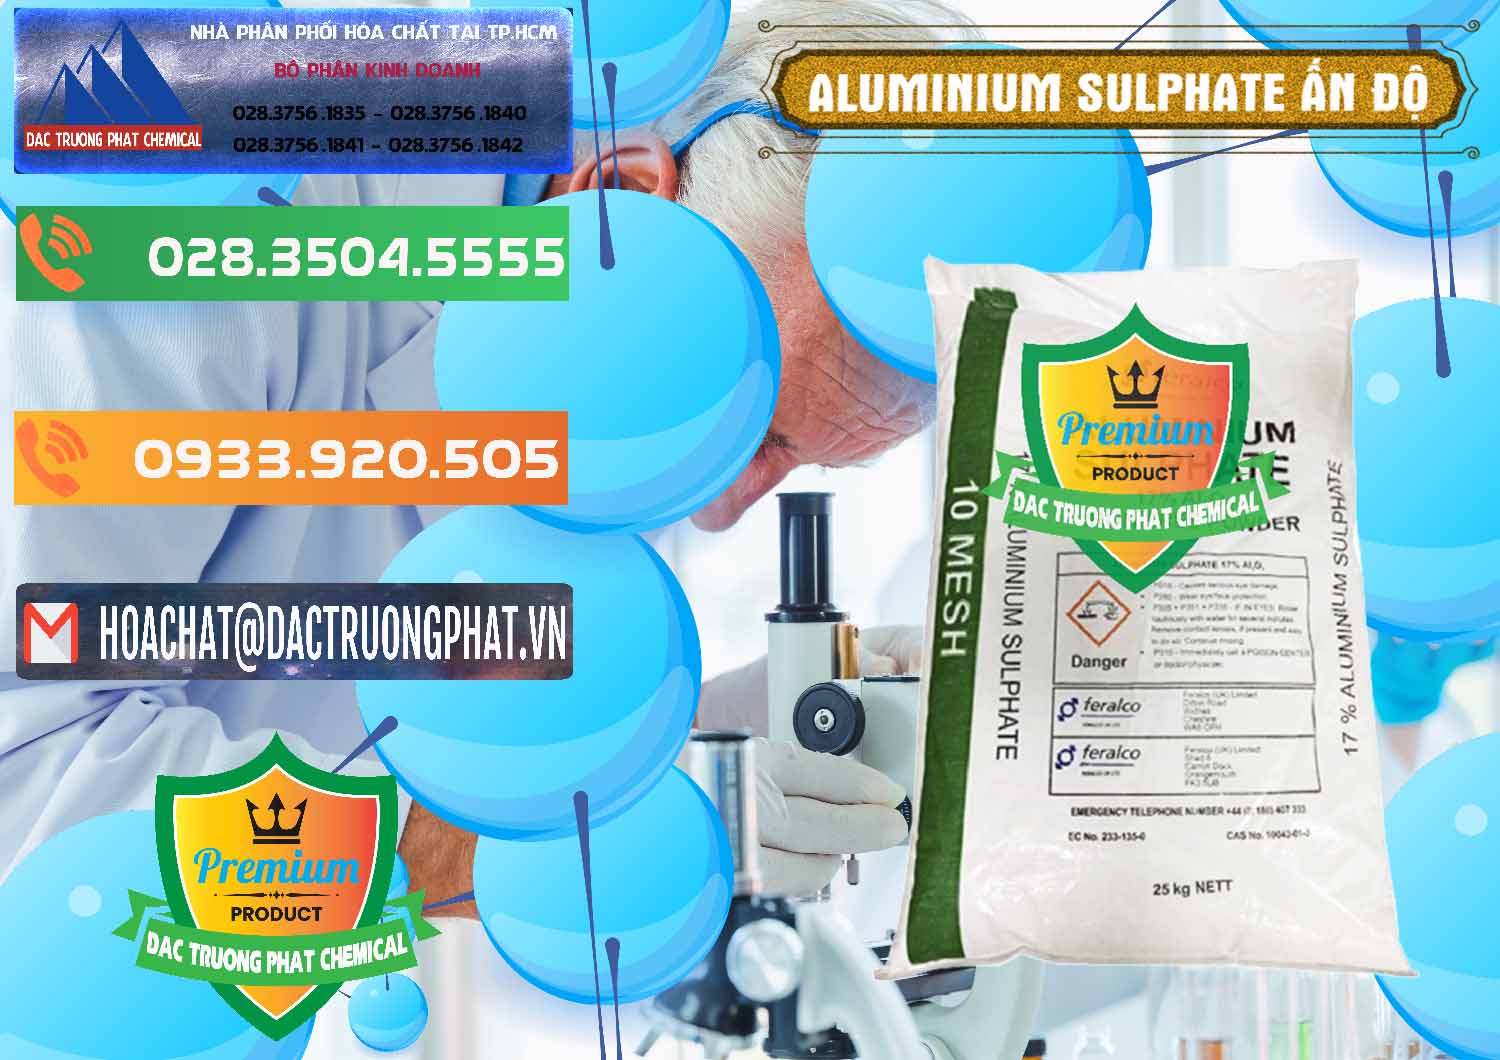 Công ty chuyên bán ( phân phối ) Phèn Nhôm - Al2(SO4)3 17% Ấn Độ India - 0463 - Chuyên phân phối & cung cấp hóa chất tại TP.HCM - hoachatxulynuoc.com.vn